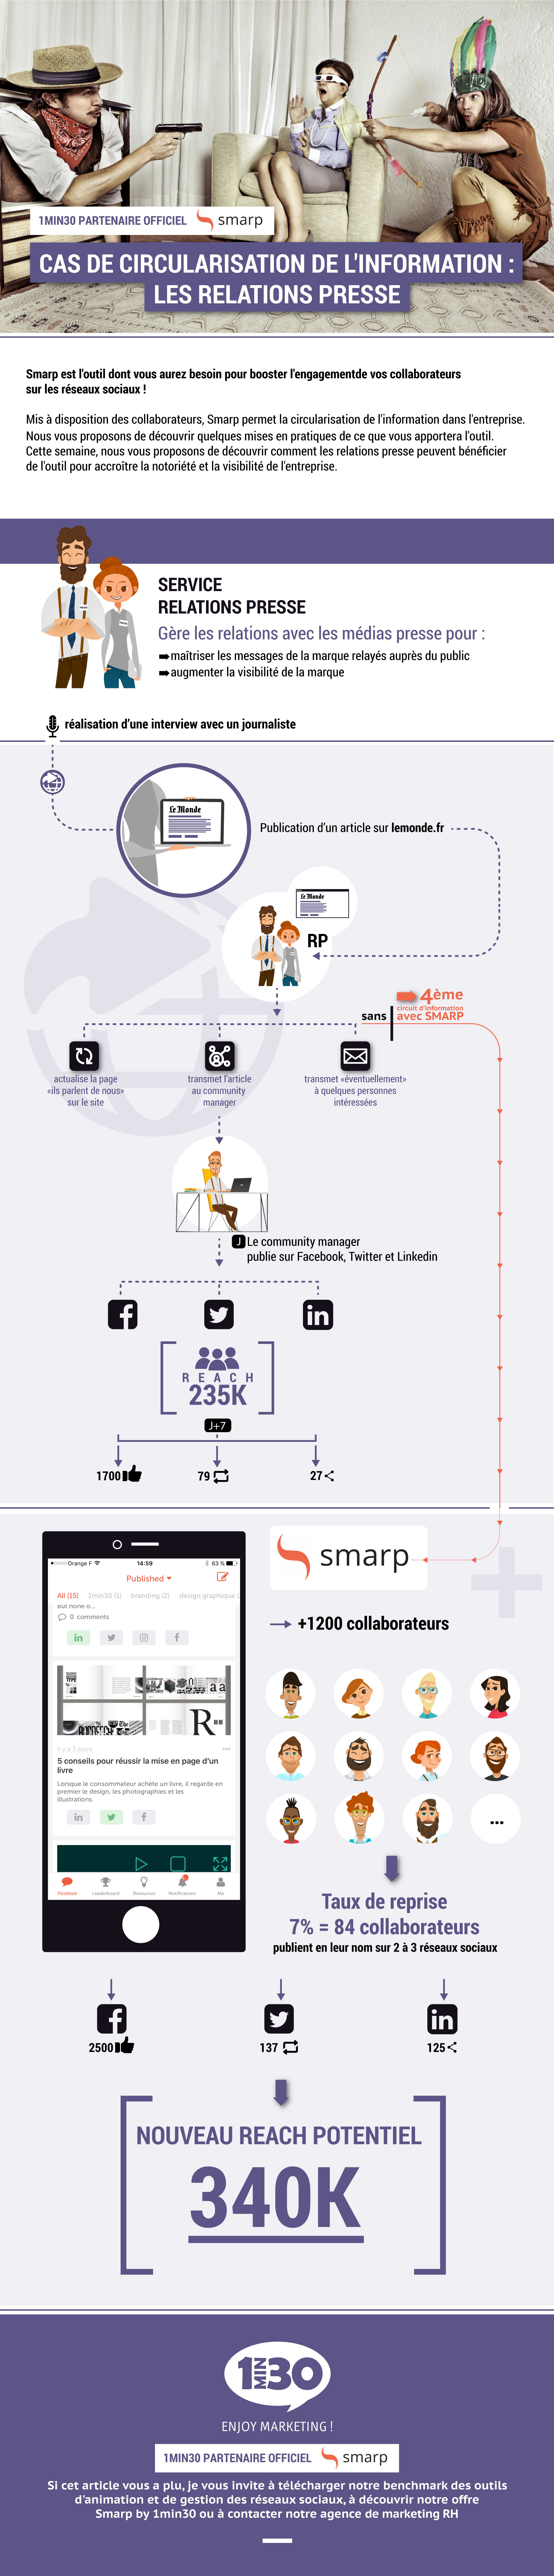 Infographie : Comment Smarp facilite l'action des relations presse